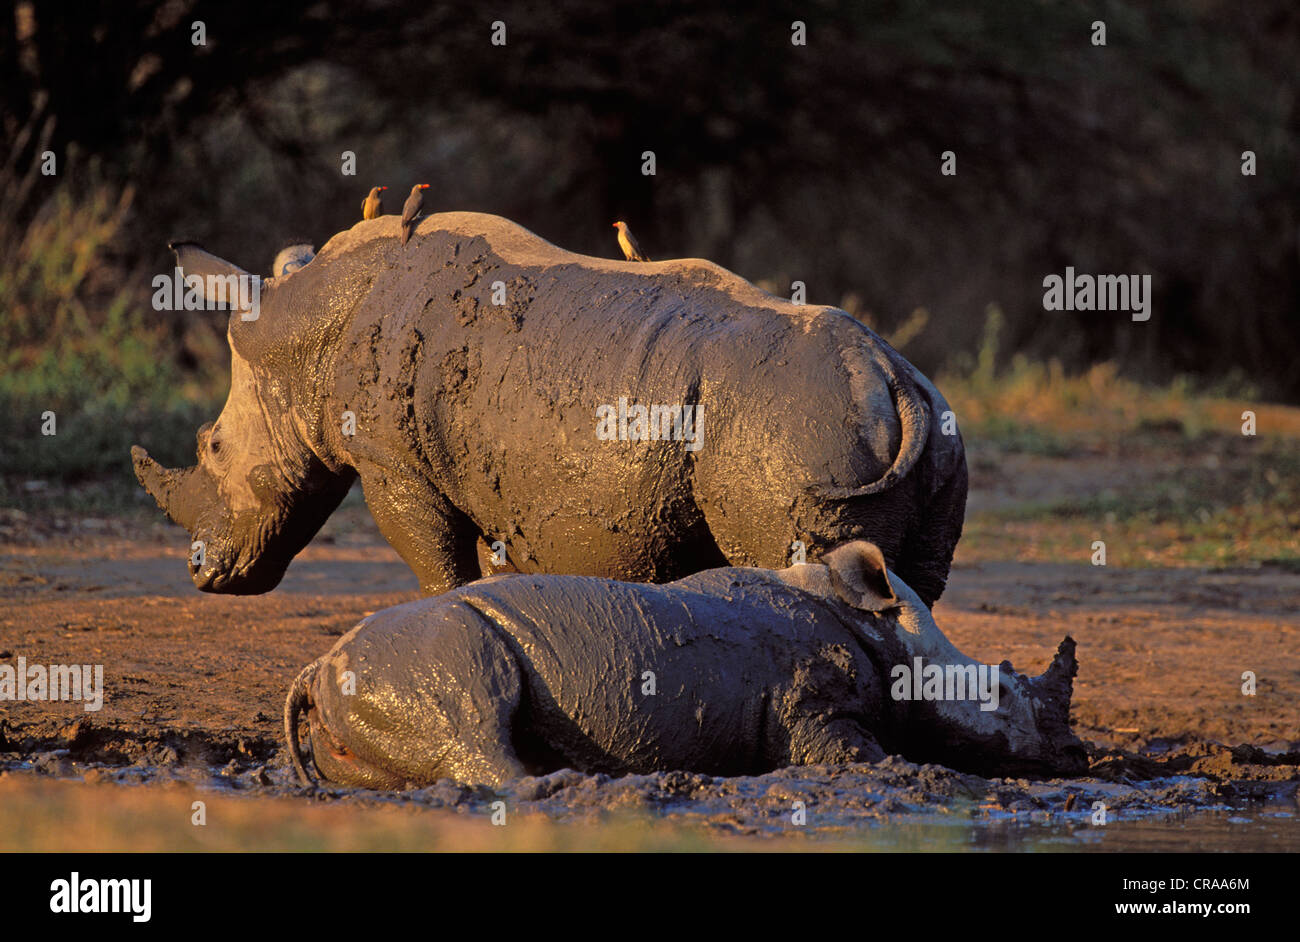 Weiße Nashörner (Rhinocerotidae)), im Schlamm wälzen, gefährdete Arten, Krüger Nationalpark, Südafrika, Afrika Stockfoto